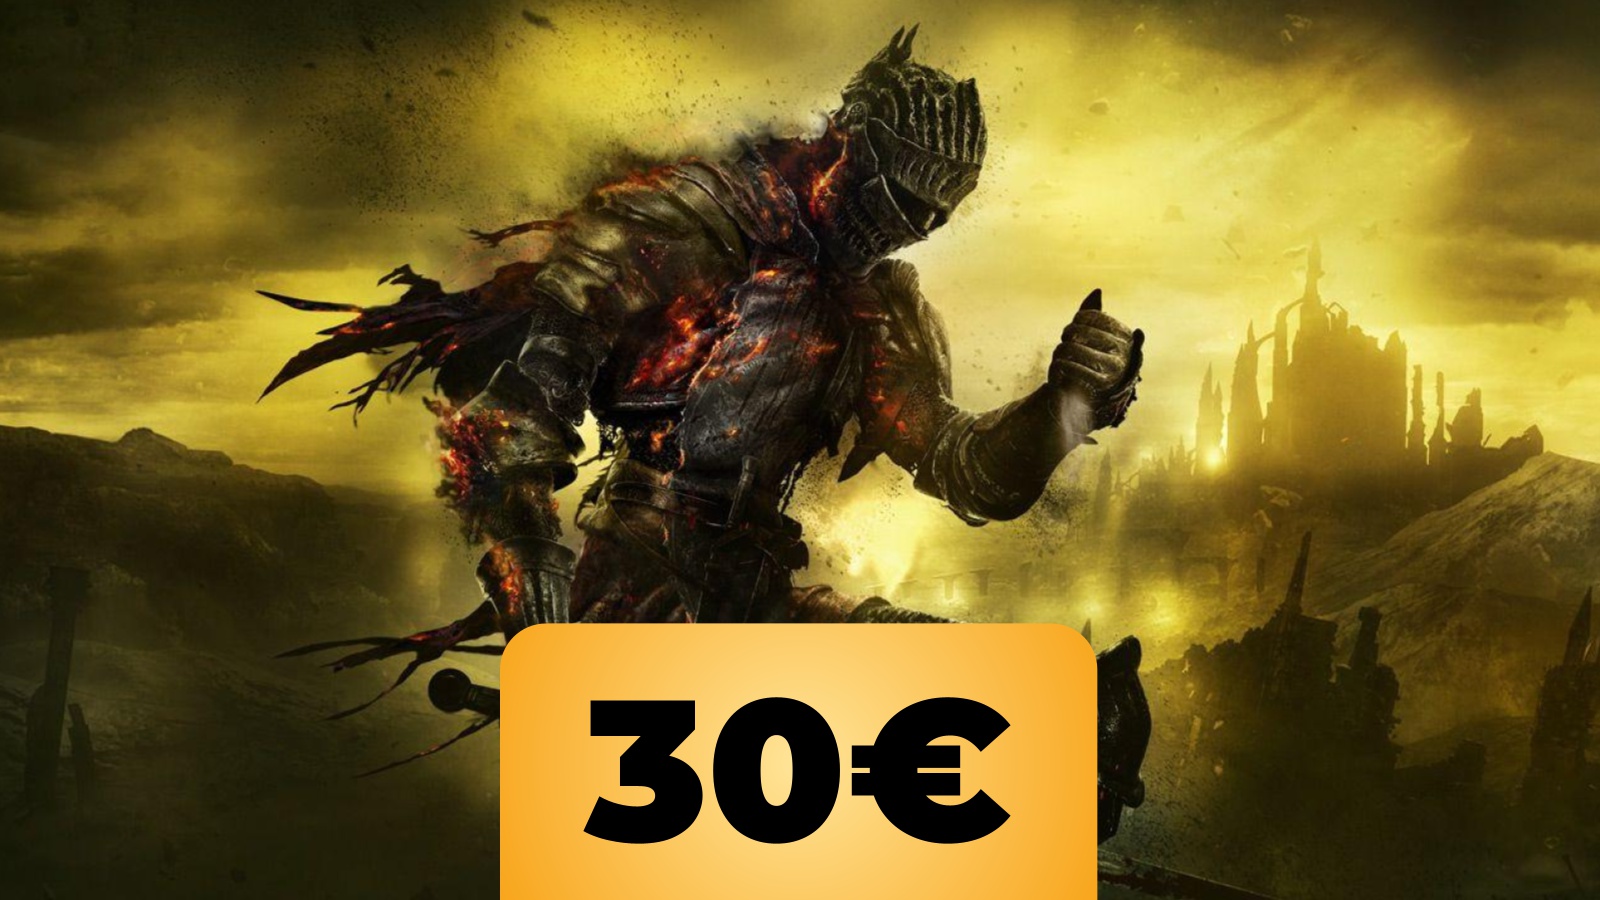 Il boss finale di Dark Souls 3 e sotto il prezzo dell'offerta di Amazon